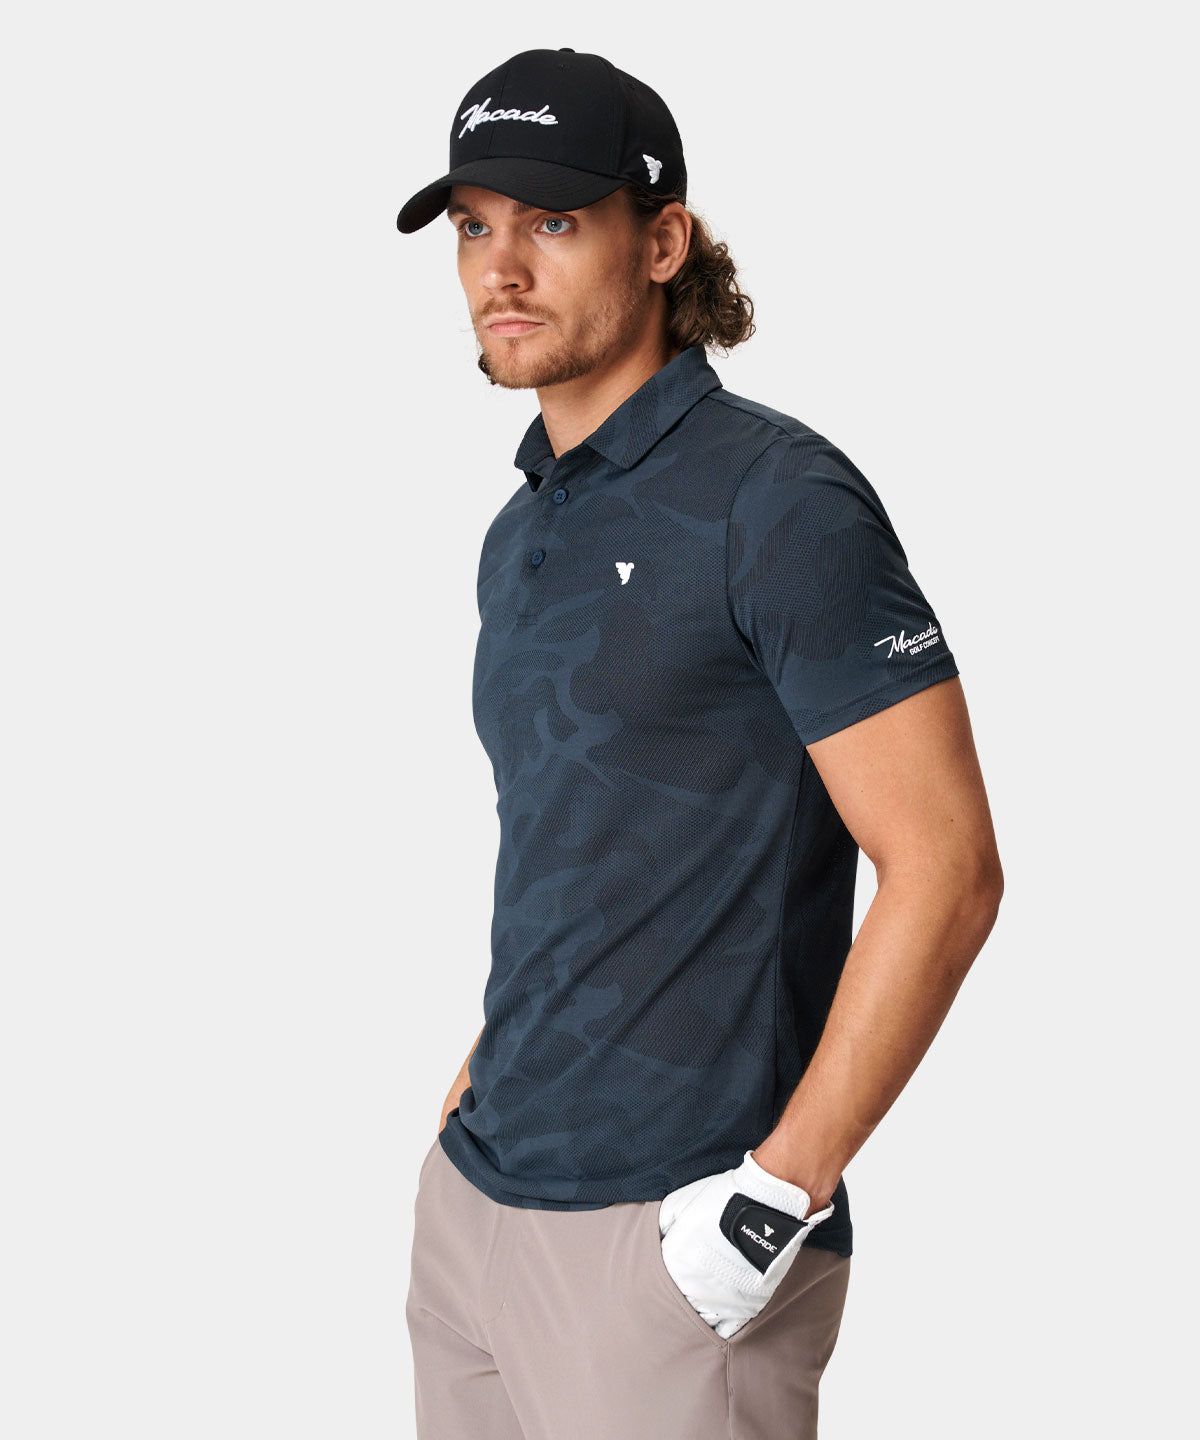 Macade Polo – Nolan Shirt Charcoal